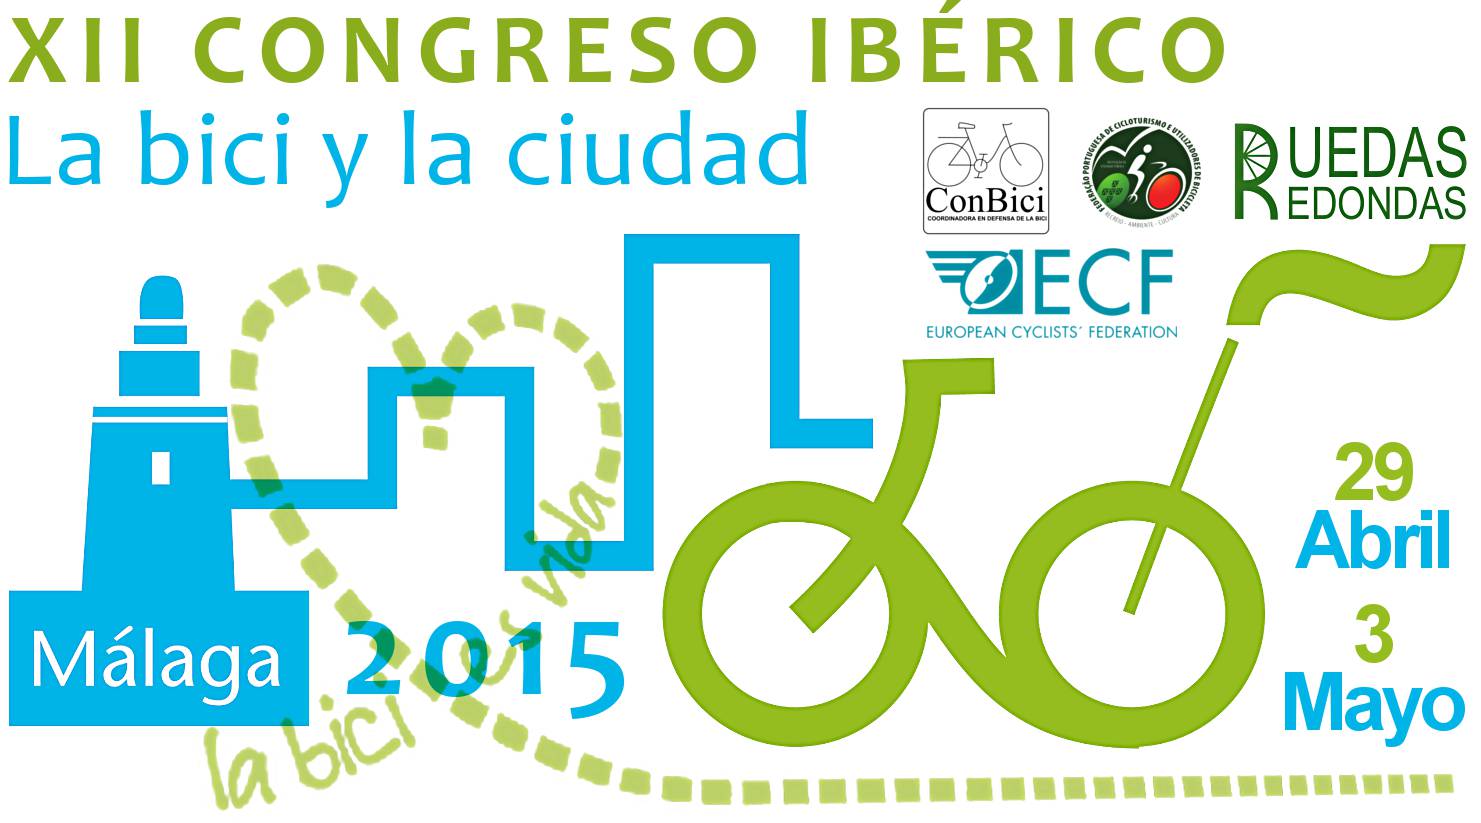 XII Congreso Ibérico La Bici y la ciudad. Malaga 2015. 29 Abril-3 Mayo